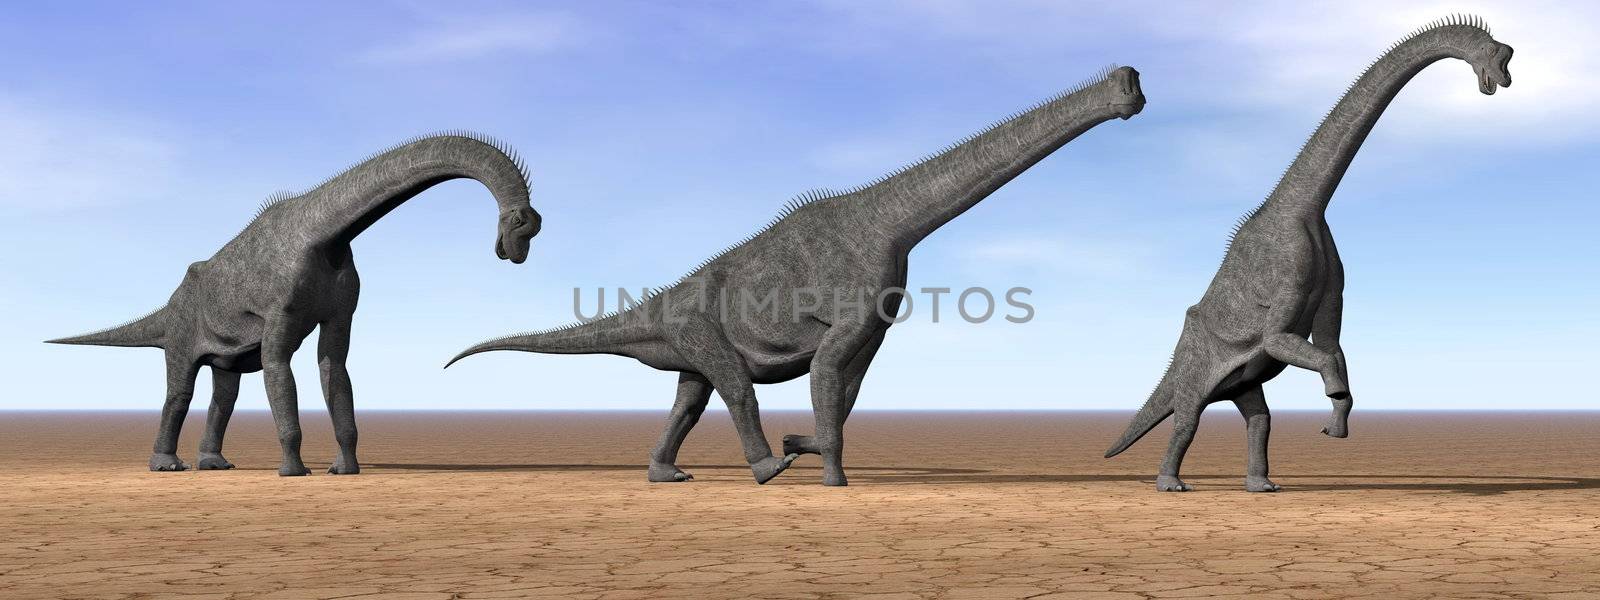 Three brachiosaurus dinosaurs standing in the desert by daylight